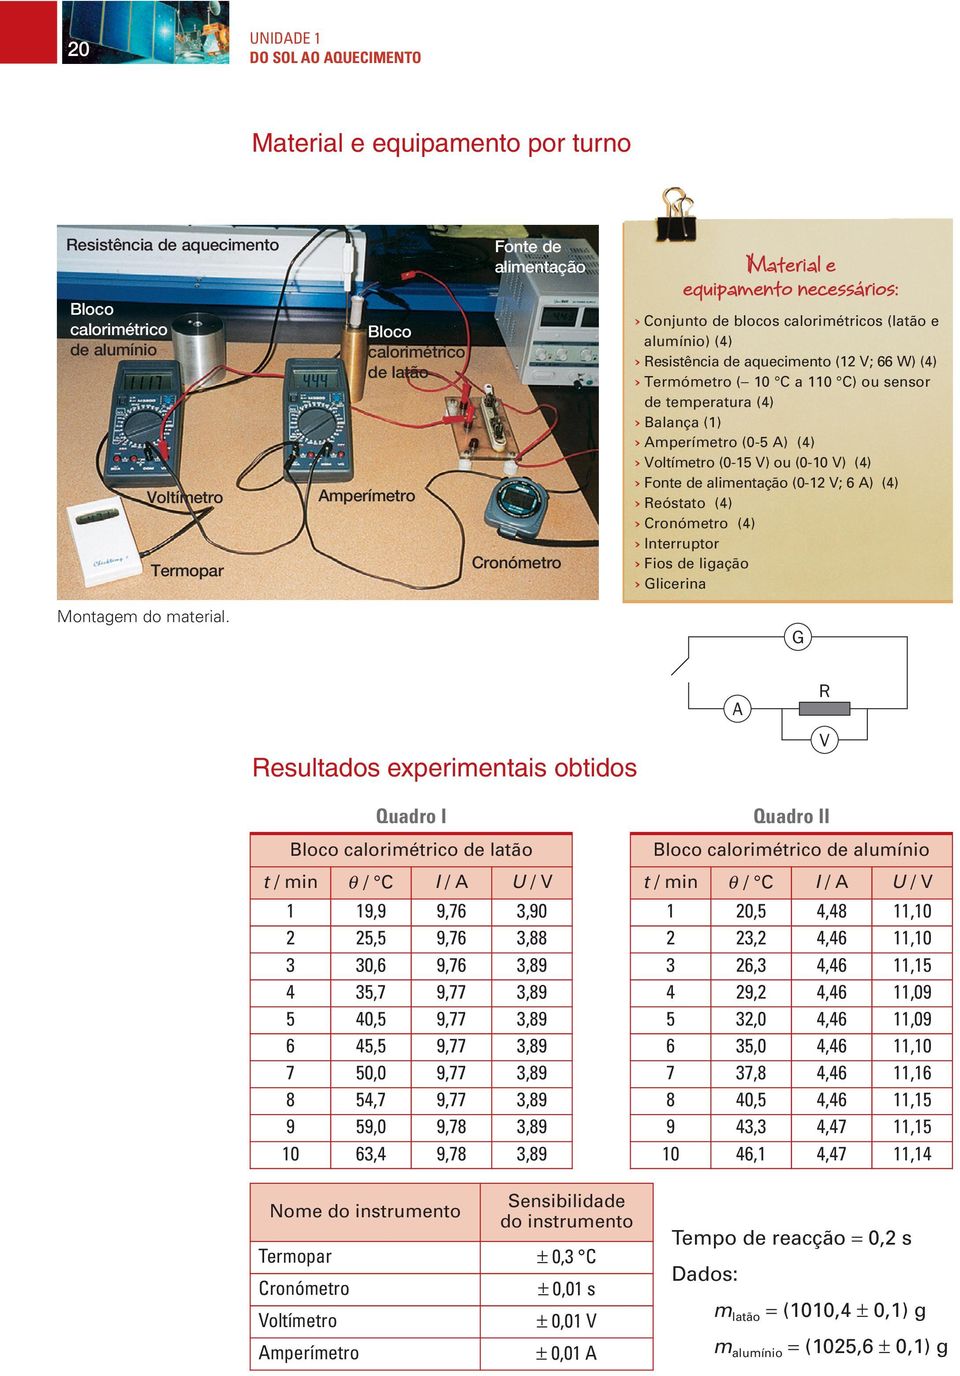 66 W) (4) Termómetro (- 10 C a 110 C) ou sensor de temperatura (4) Balança (1) Amperímetro (0-5 A) (4) Voltímetro (0-15 V) ou (0-10 V) (4) Fonte de alimentação (0-12 V; 6 A) (4) Reóstato (4)